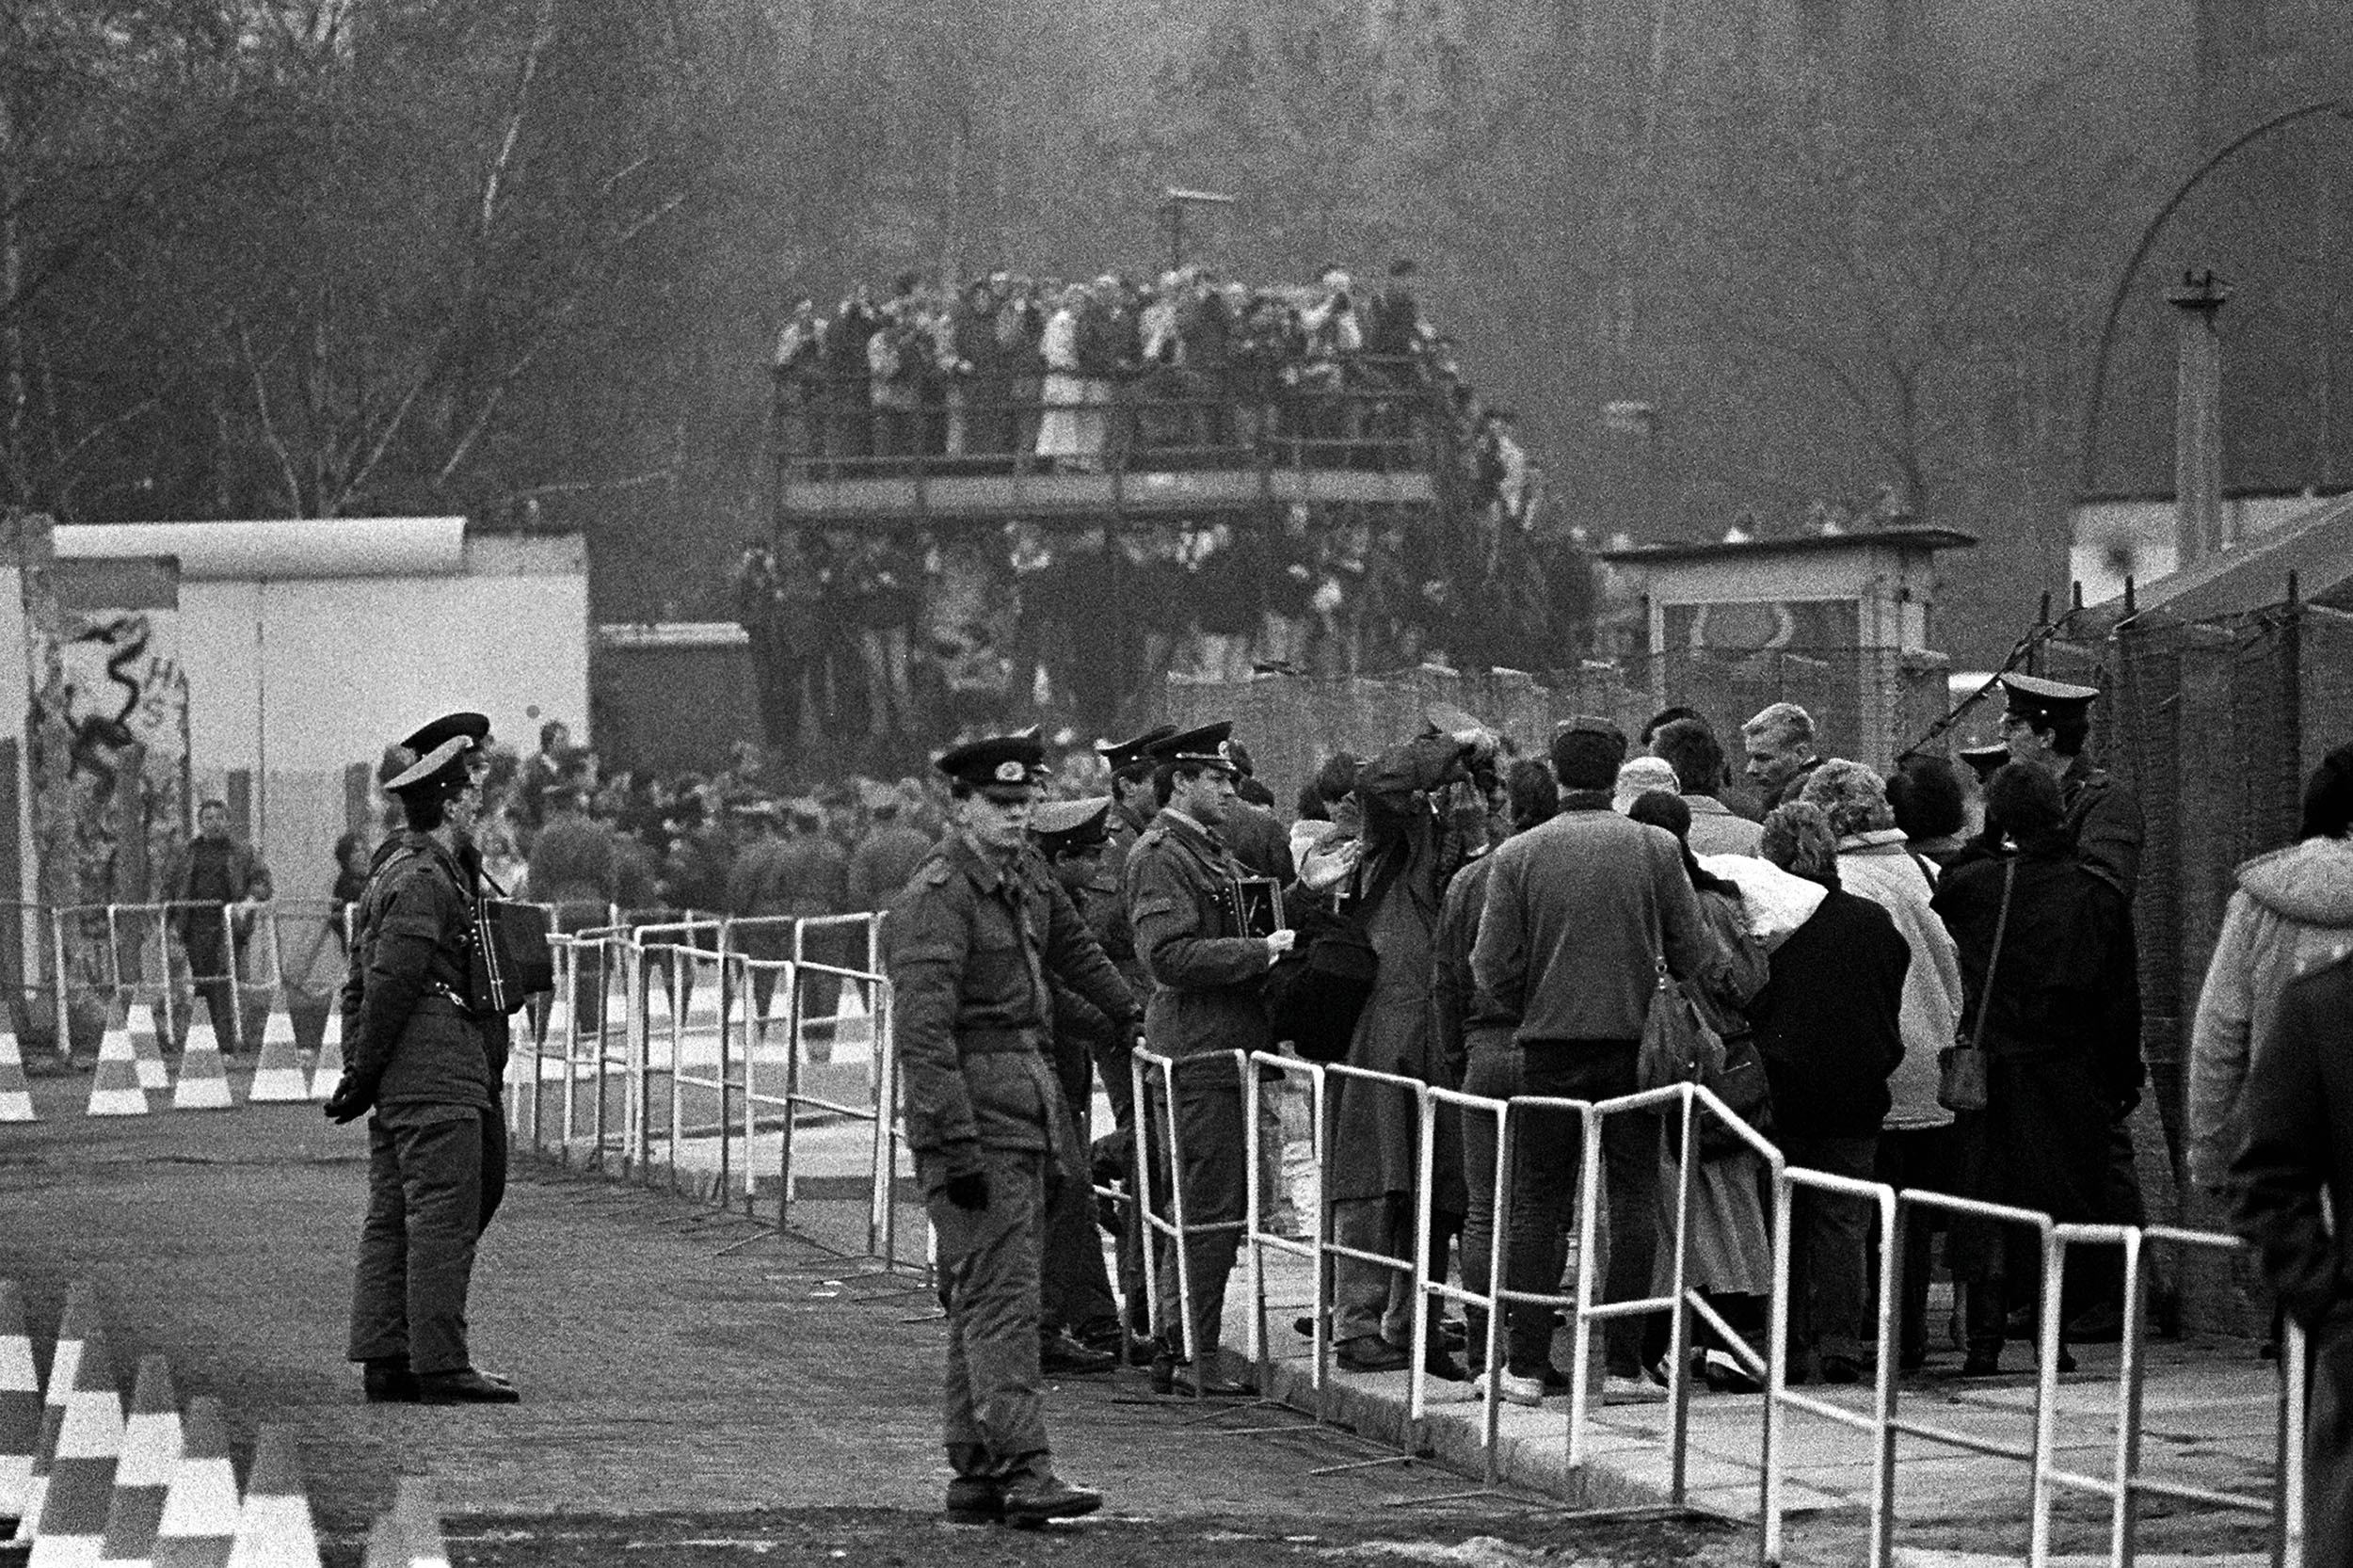 Berlínská zeď byla symbolem studené války. Padla během jediné noci. Většina lidí si tehdy nedokázala představit, co všechno to bude znamenat.